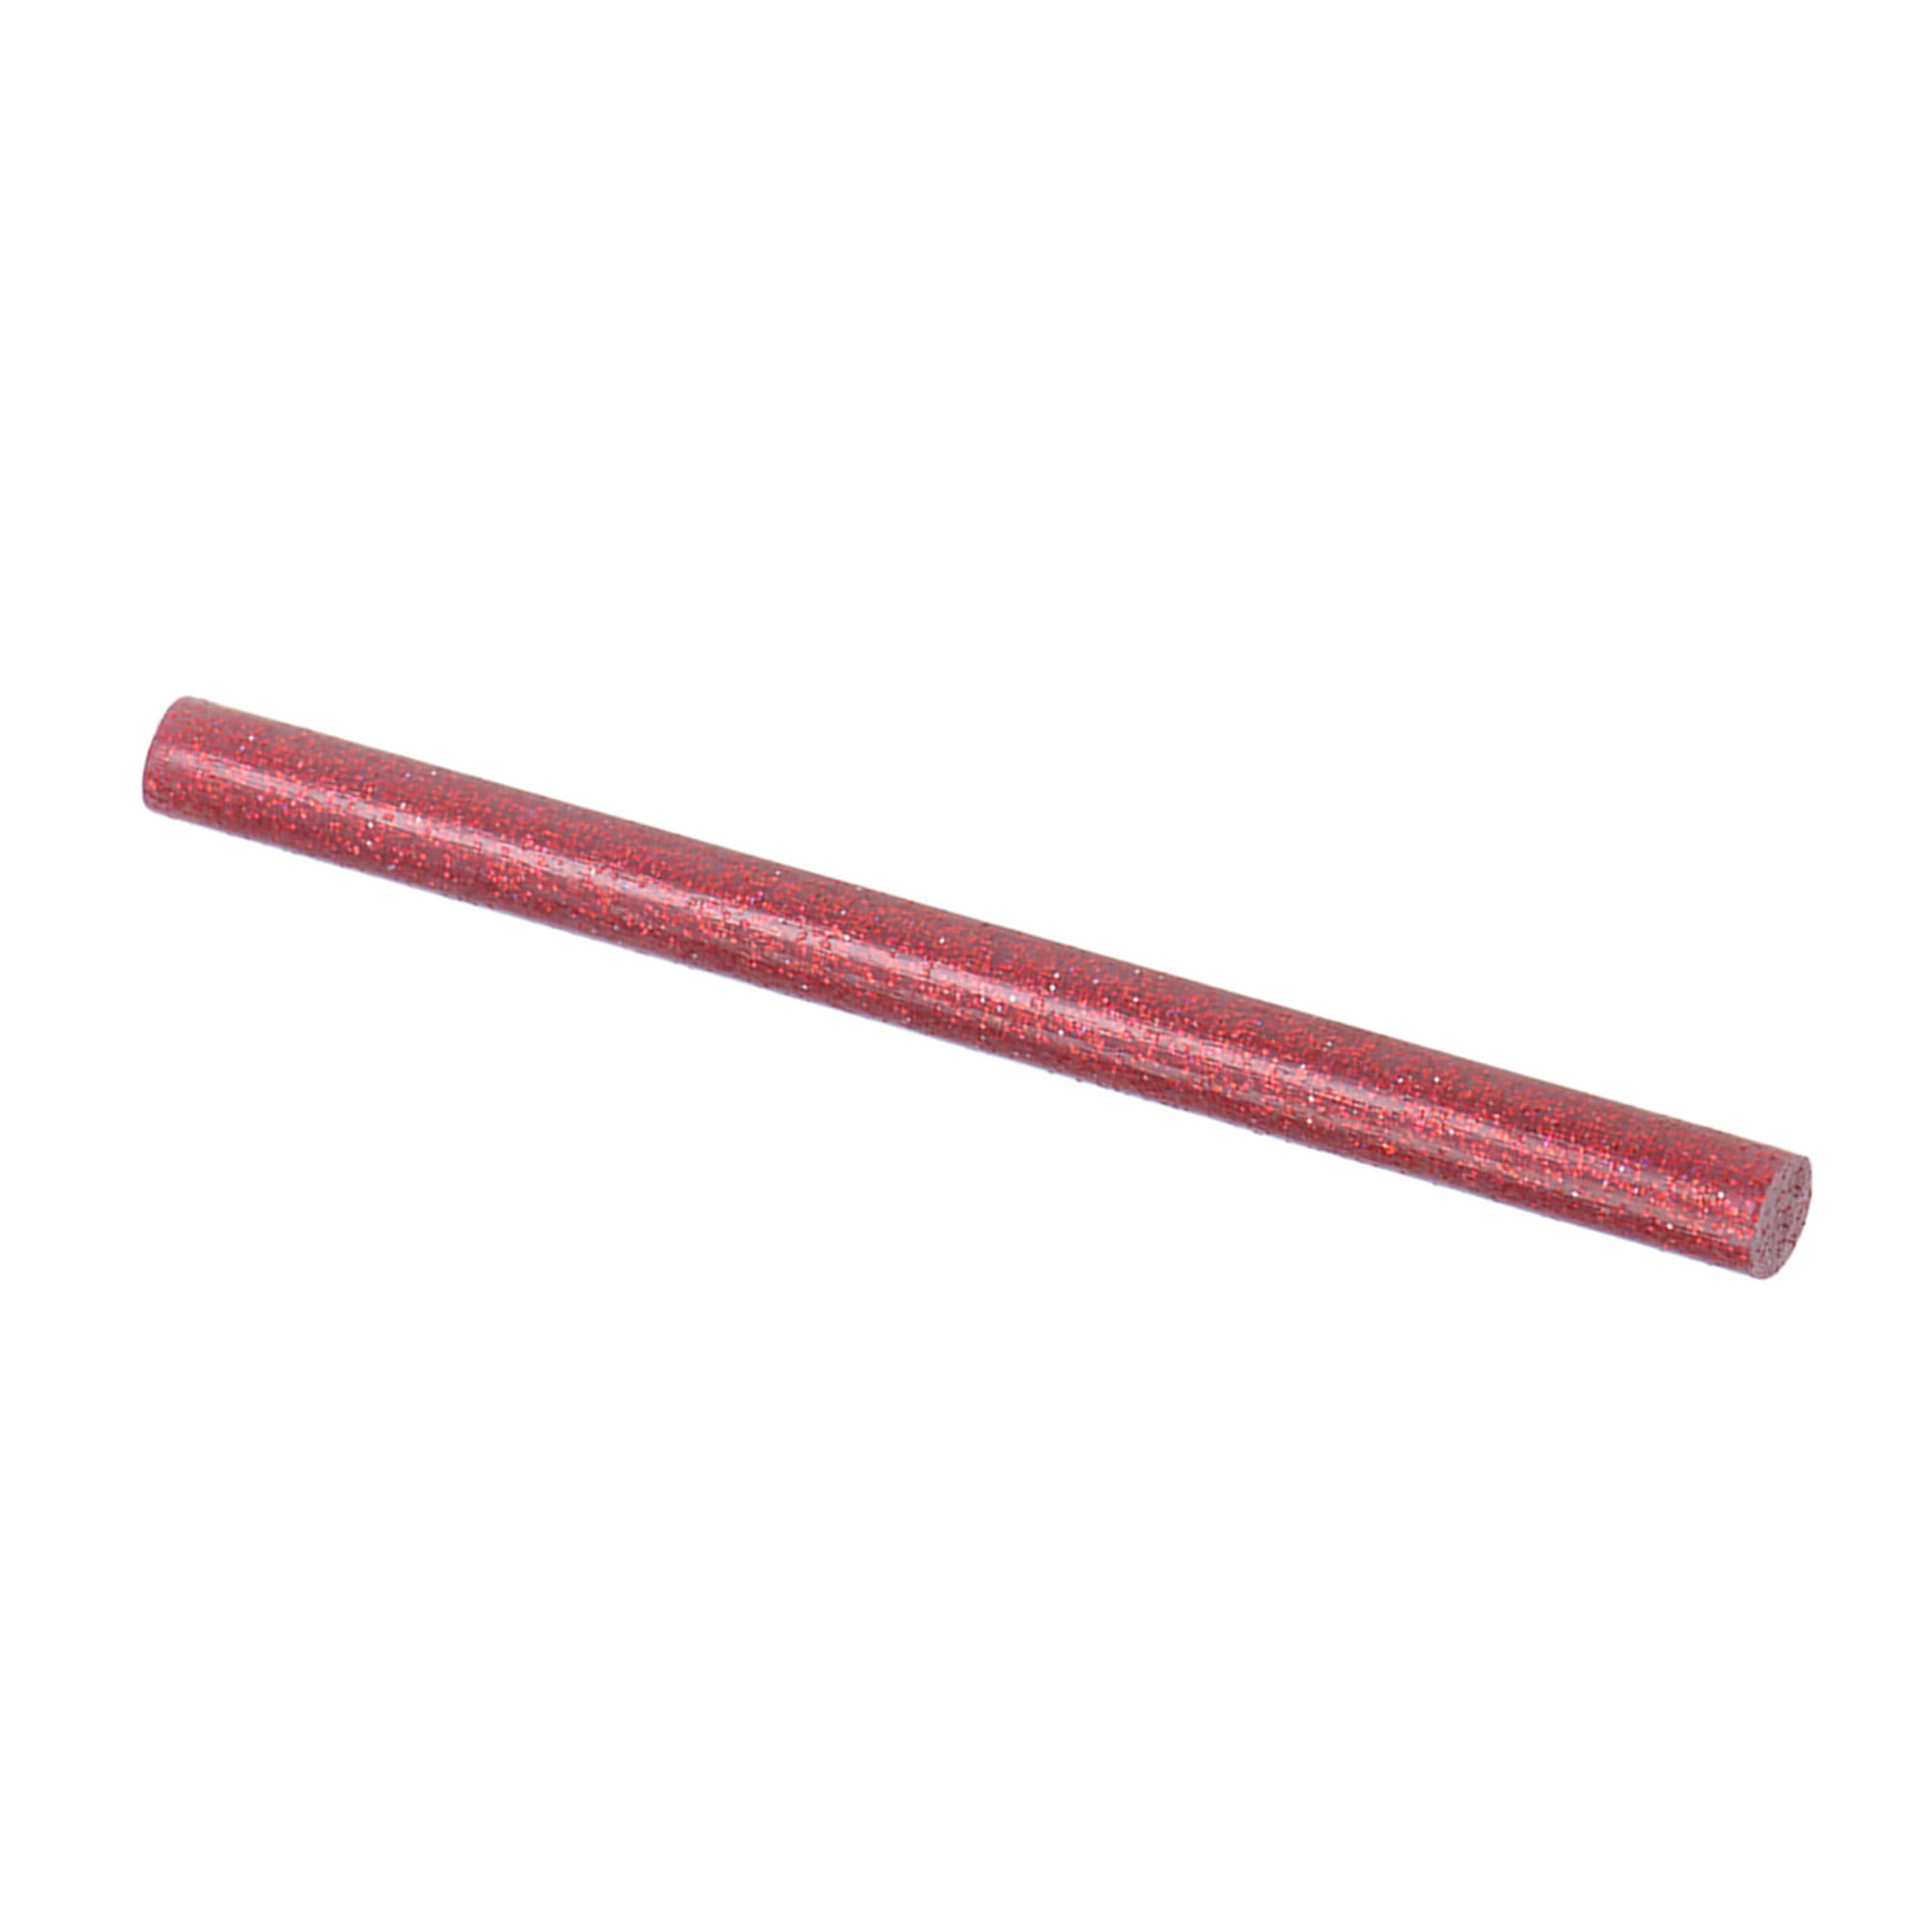 Mr. Pen- Glitter Hot Glue Sticks, 4x0.27, 48 pcs, Colored Hot Glue Gun  Sticks, Mini Glue Sticks for Hot Glue Gun, Mini Hot Glue Sticks, Colored  Glue